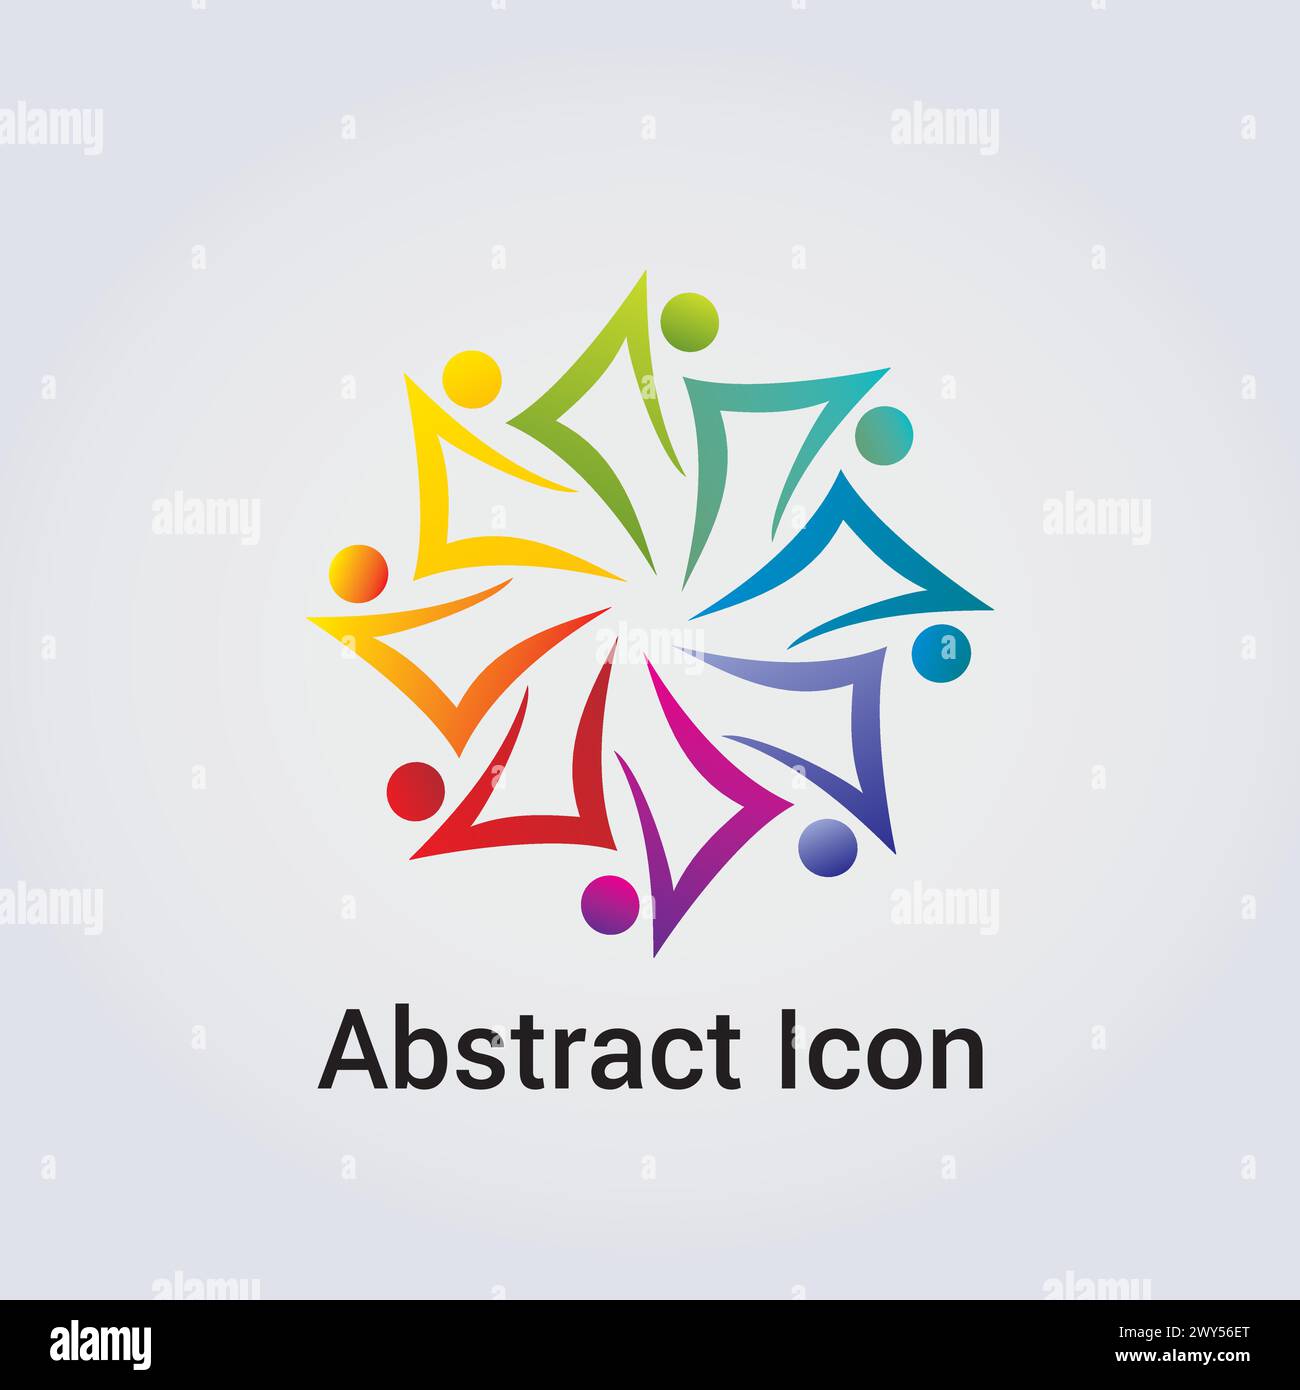 Icona astratta Logo Design forme primarie sagome sagome People Dance Star Circle Clover varie rete di comunicazione Rainbow Colors Vector Illustrazione Vettoriale